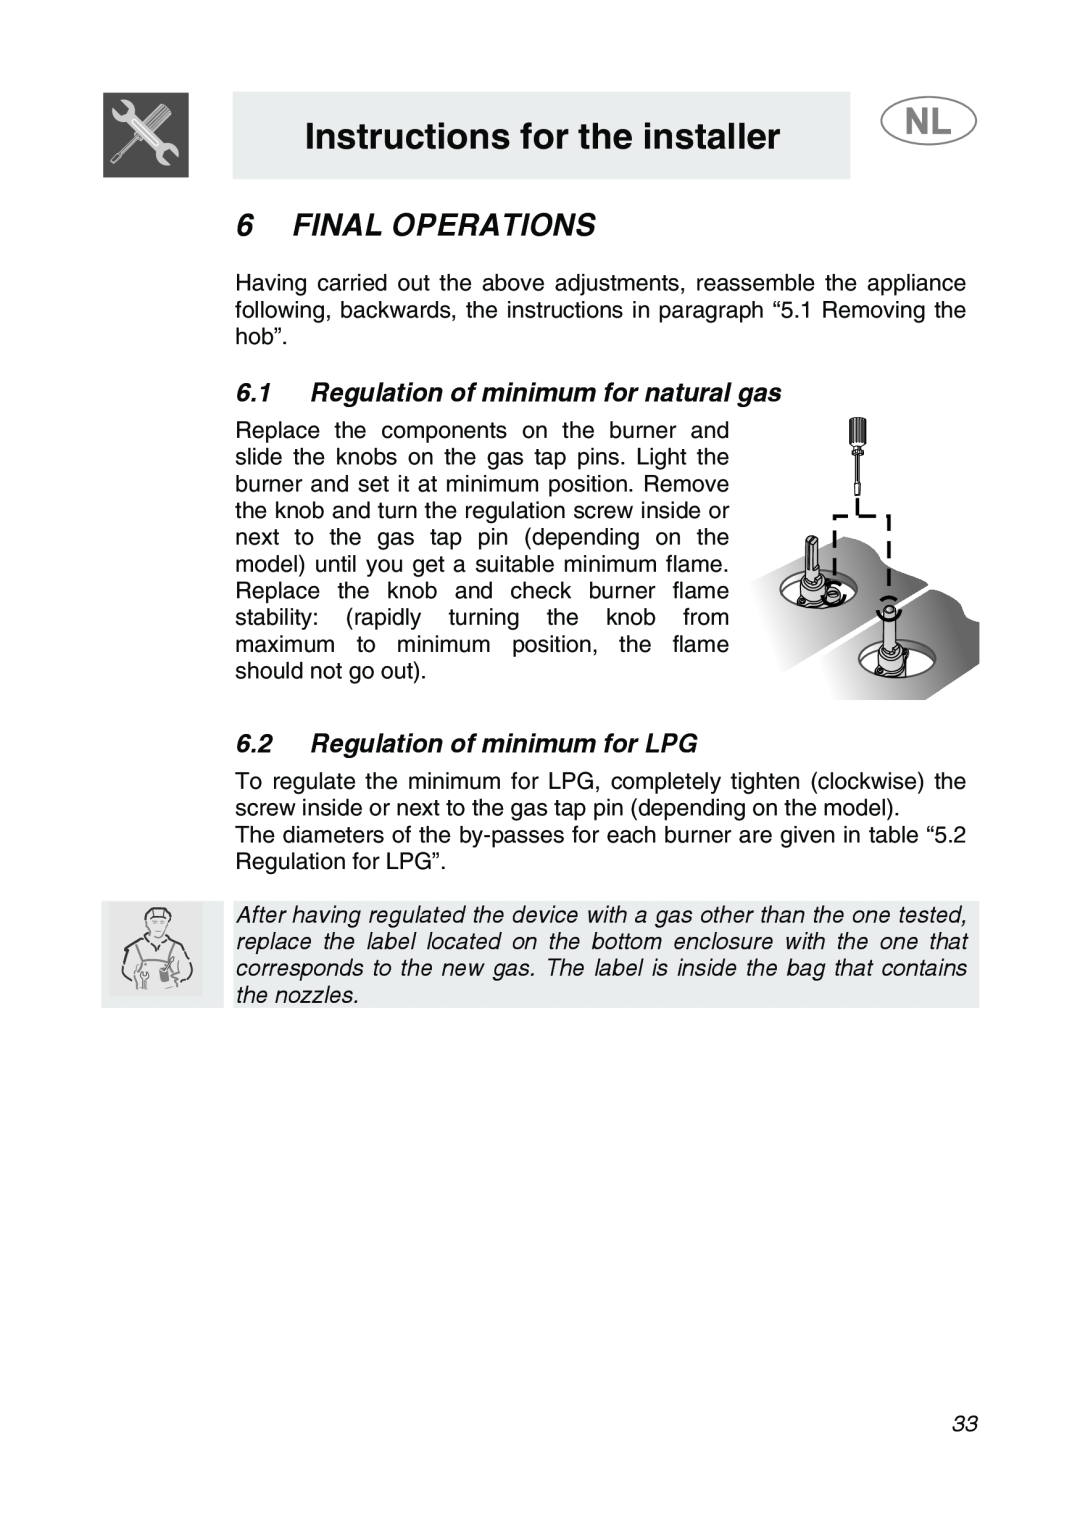 Smeg GKC755, GKCO755 manual Final Operations, 6.1Regulation of minimum for natural gas, 6.2Regulation of minimum for LPG 